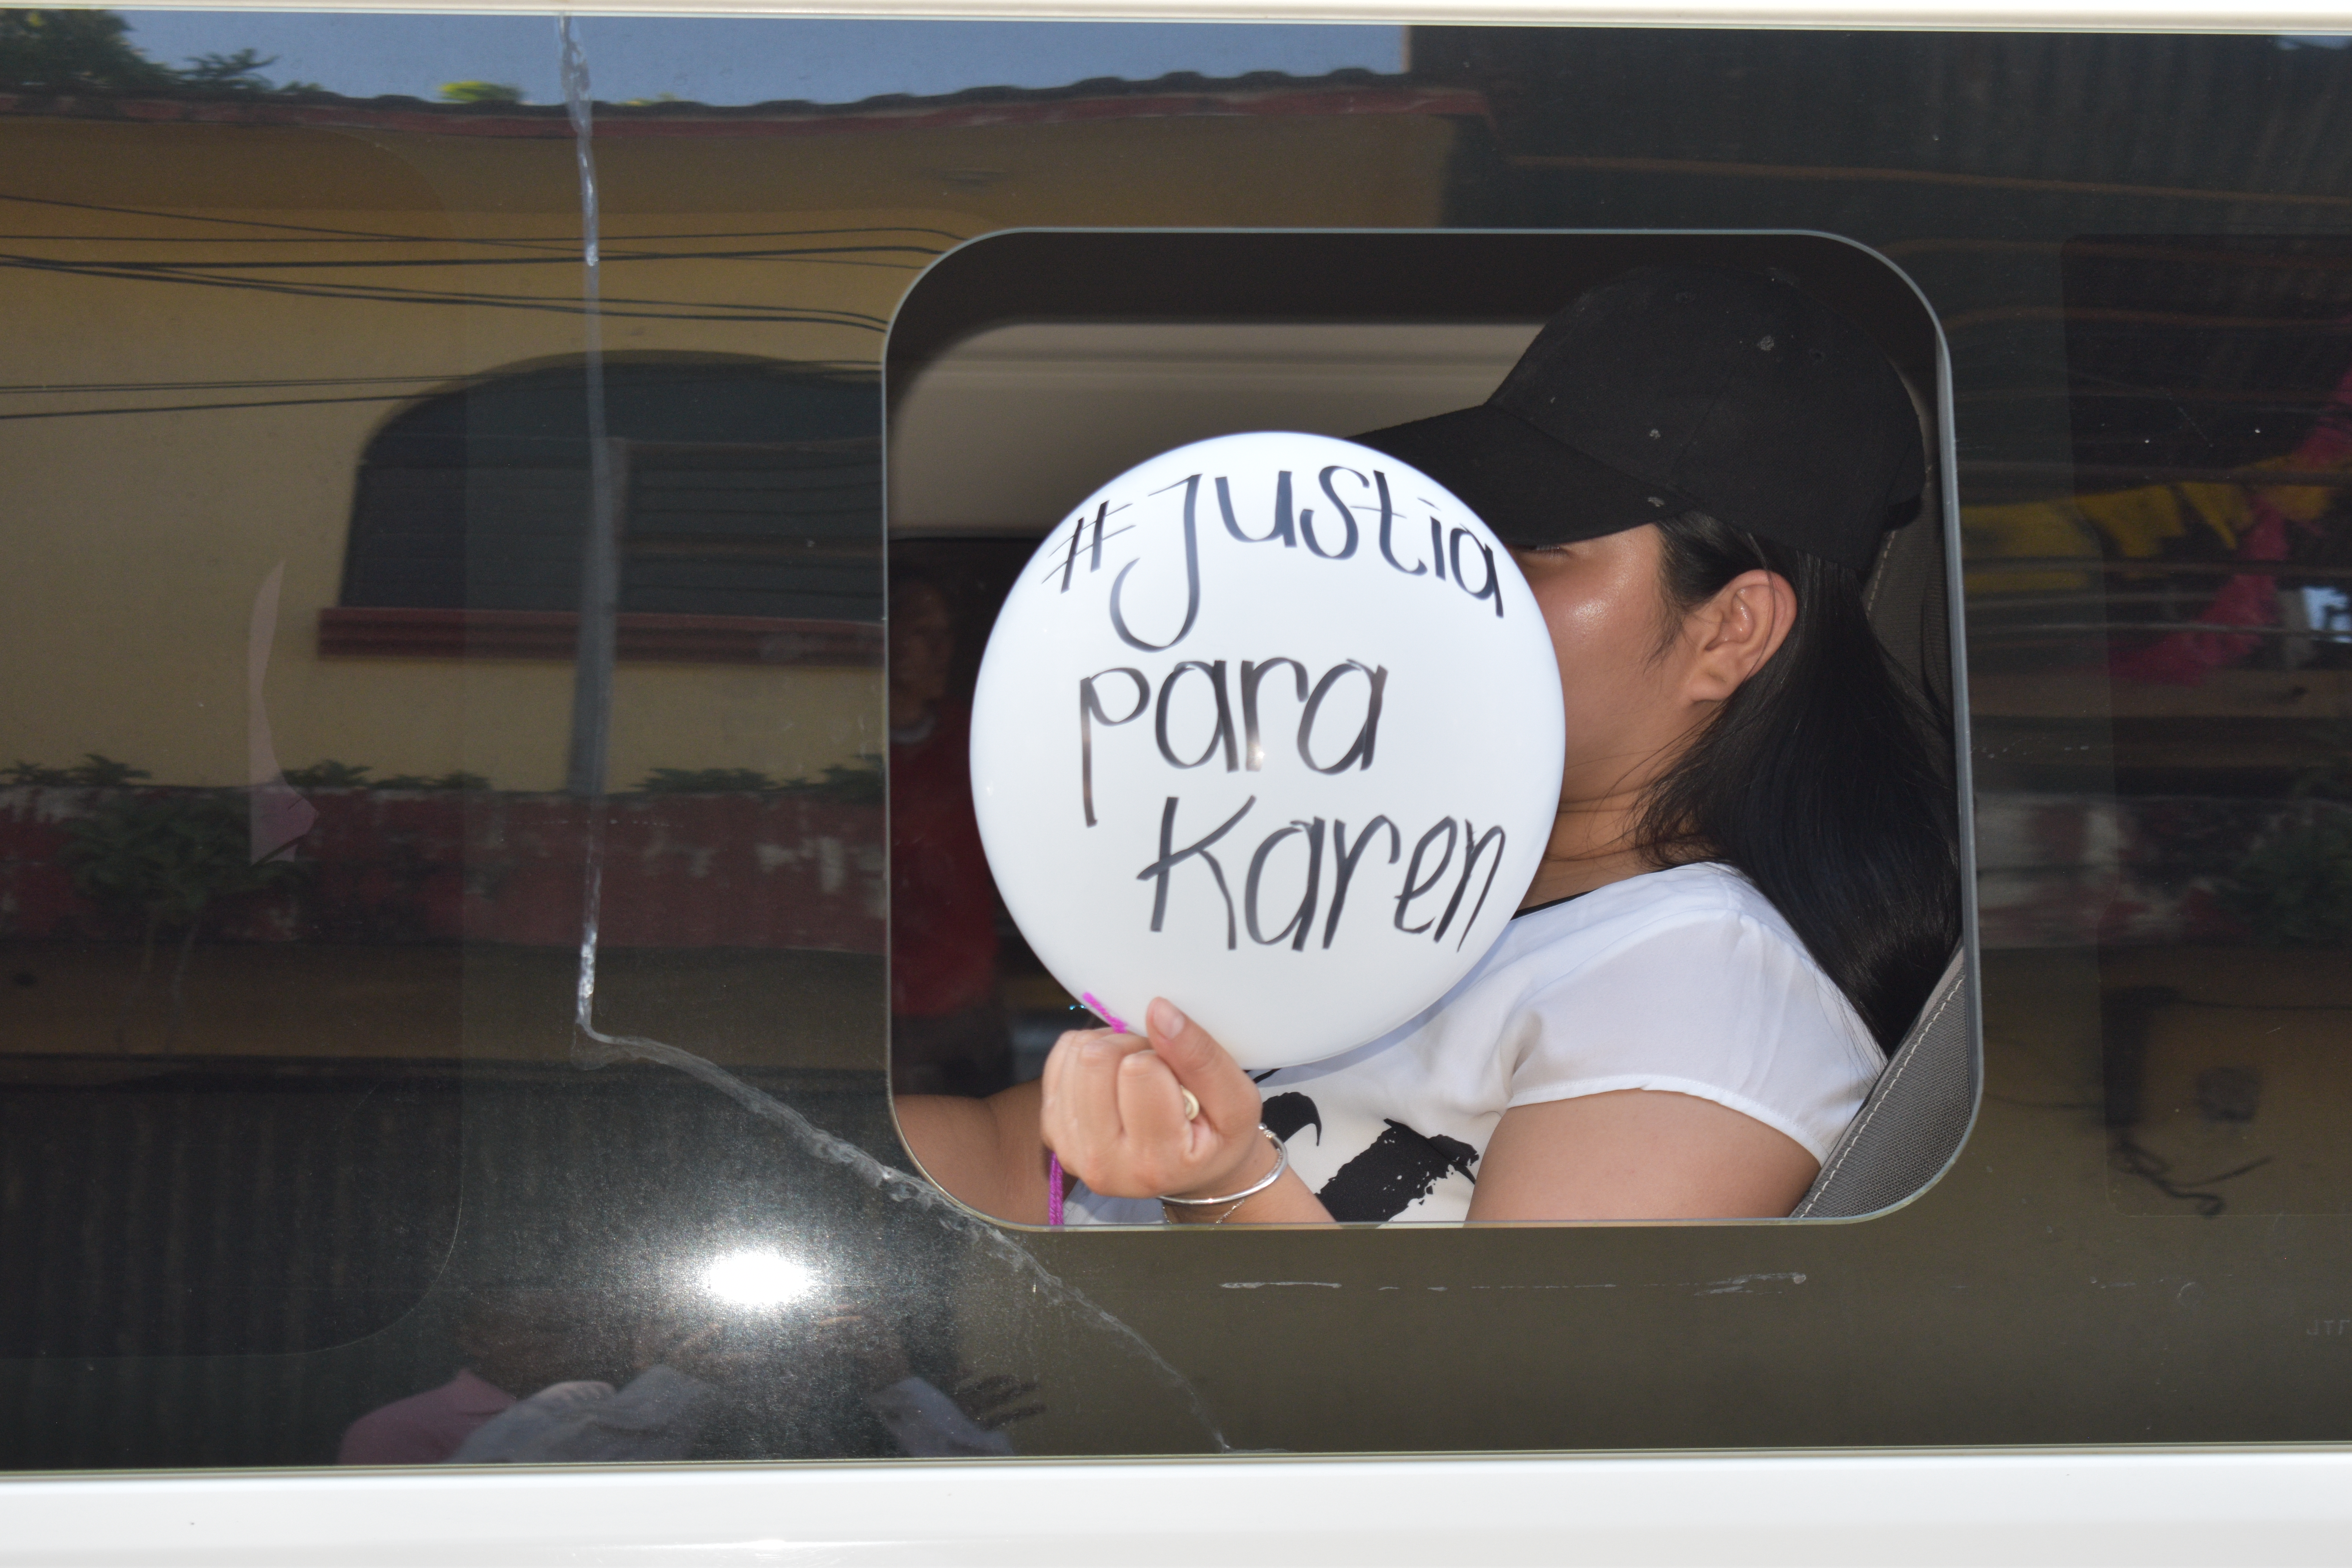 La muerte violenta de Karen Patricia Mayorga Zacarías, de 20 años, causó indignación en la población que manifestó su repudio y exigió justicia para esclarecer el hecho. (Foto Prensa Libre: Hemeroteca PL).